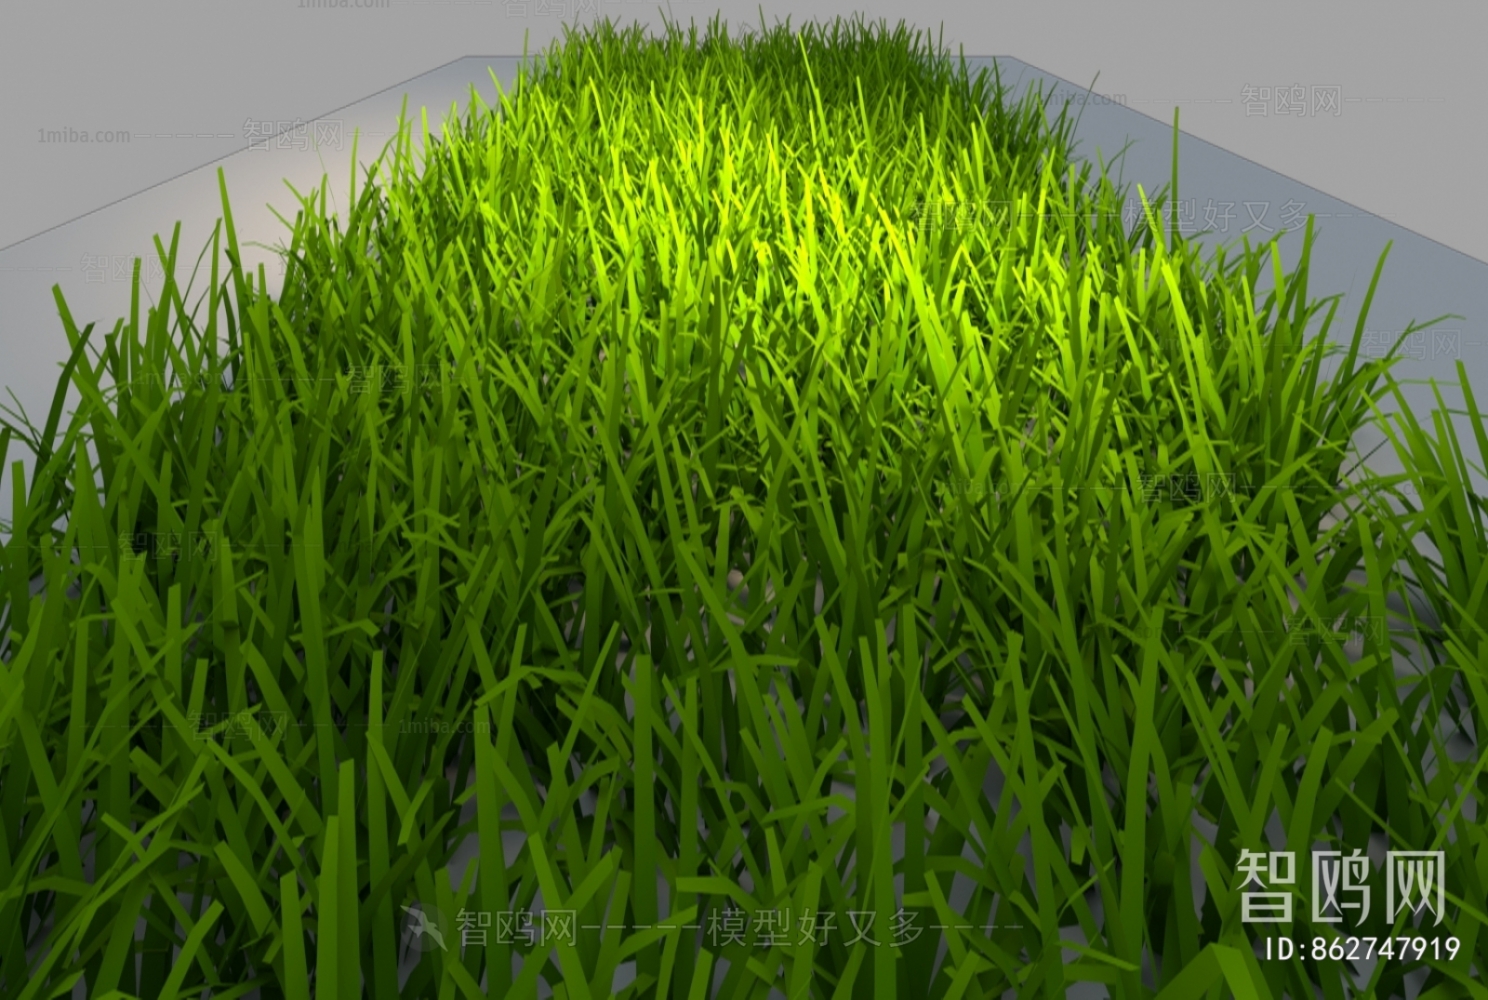 Modern The Grass